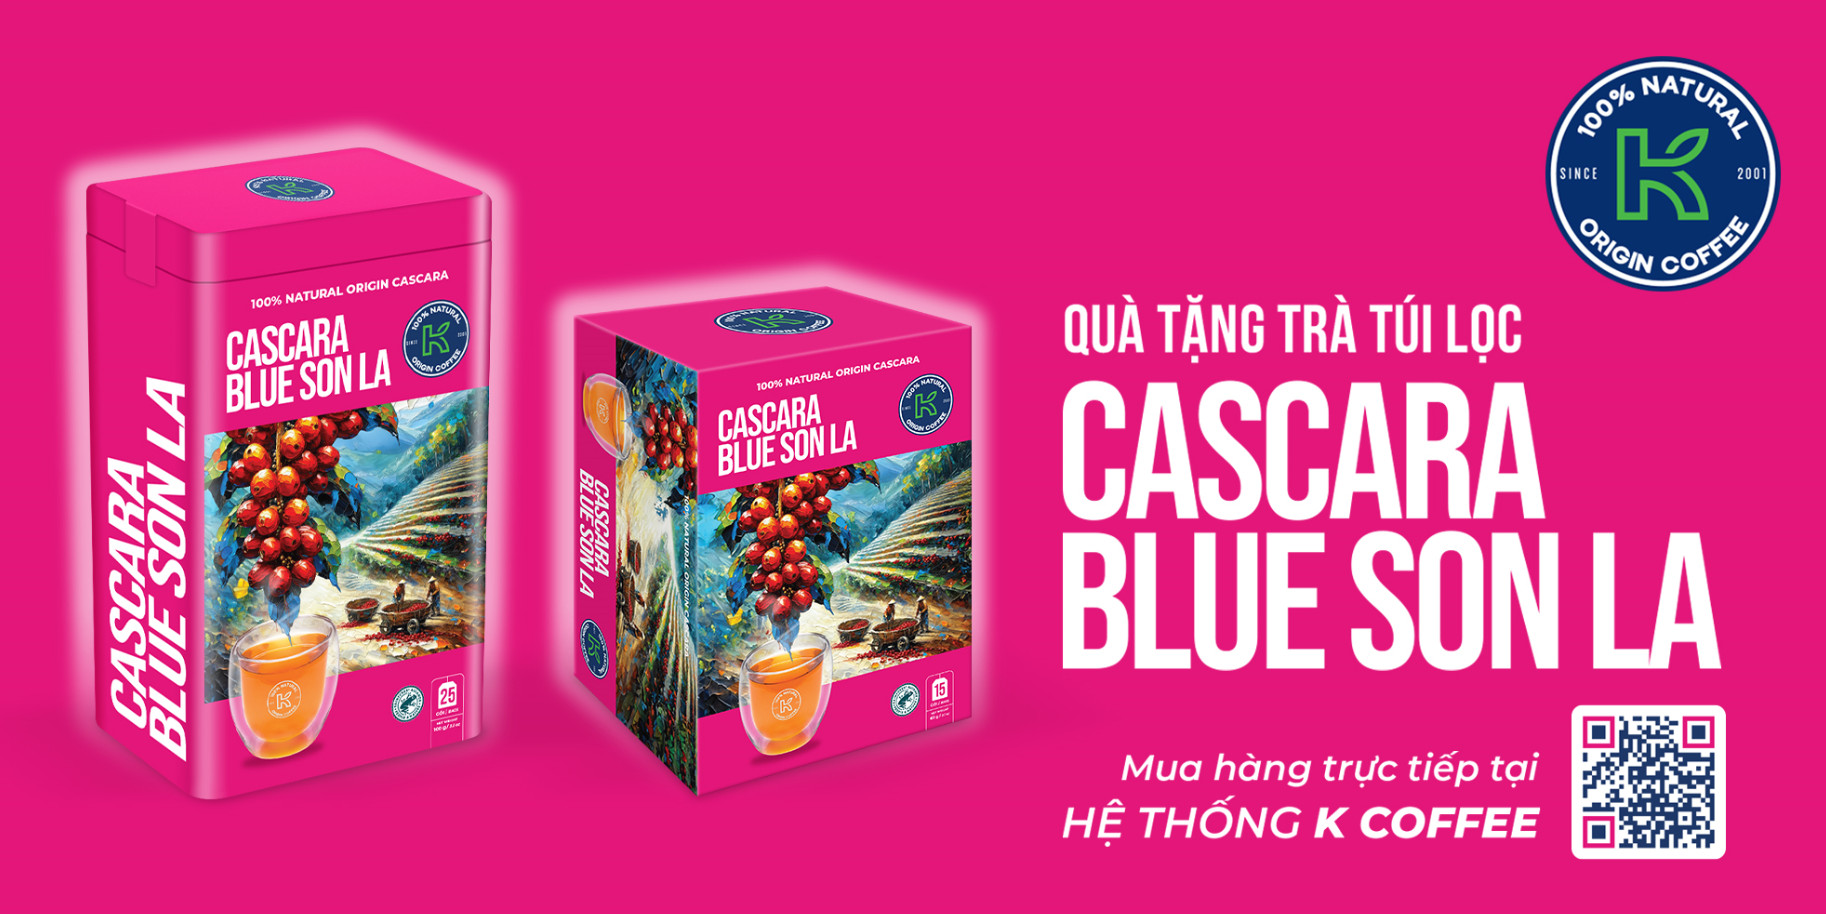 Công ty CP hàng tiêu dùng Phúc Sinh ra mắt sản phẩm trà túi lọc Cascara Blue Sơn La
